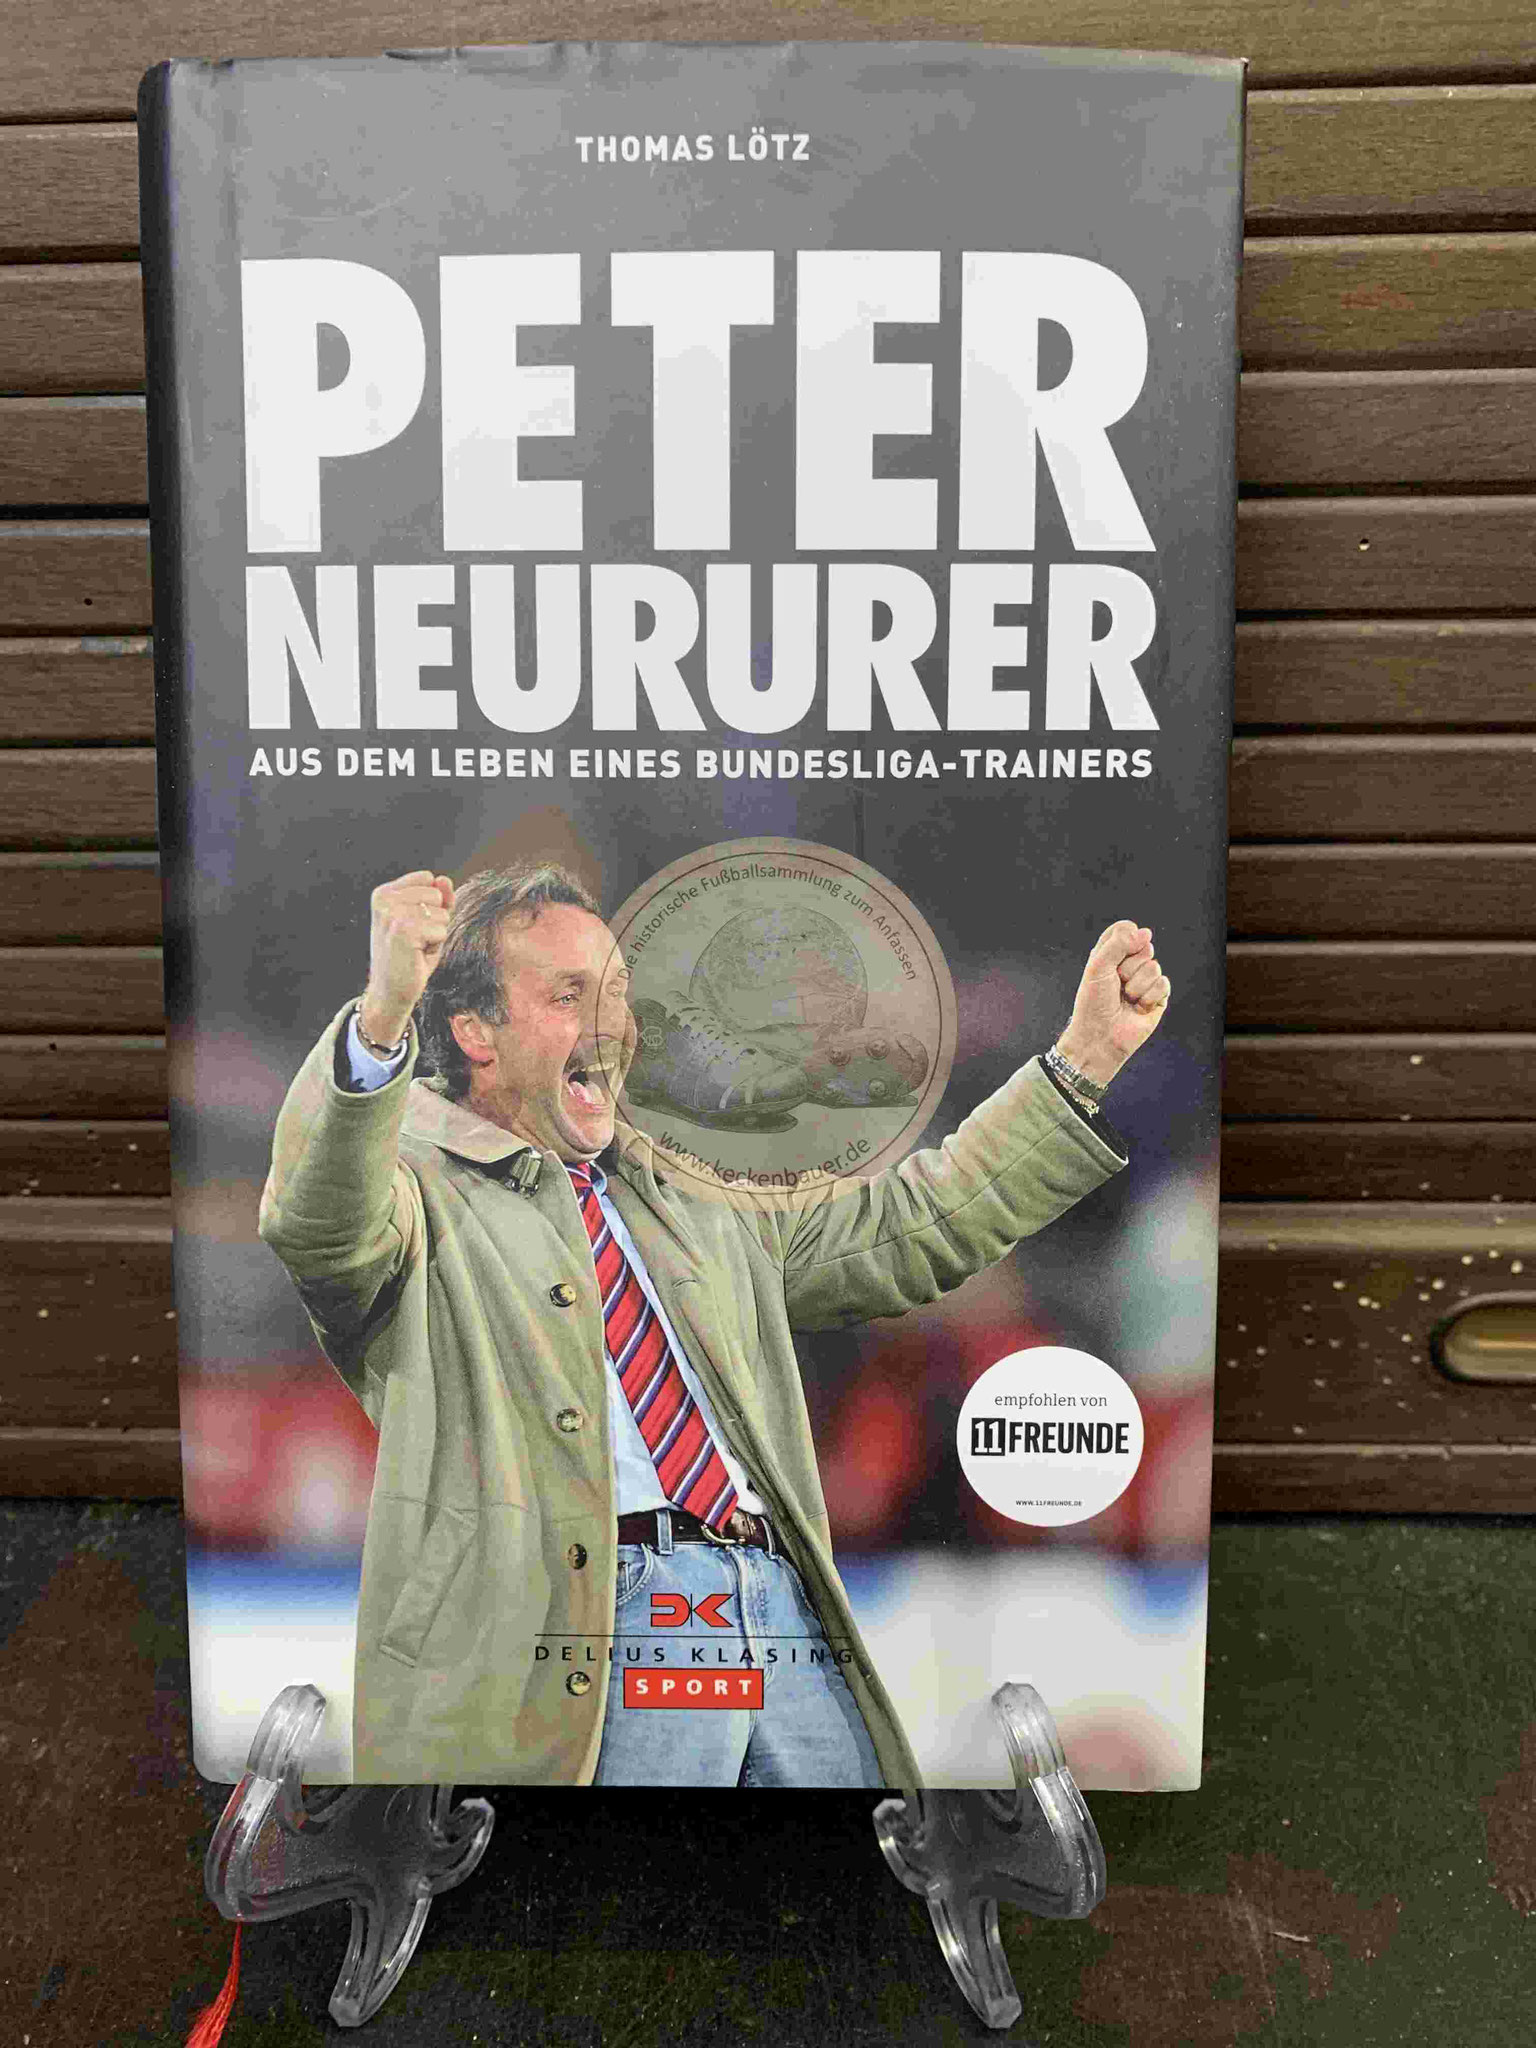 Peter Neururer Aus dem Leben eines Bundesliga-Trainers aus dem Jahr 2012